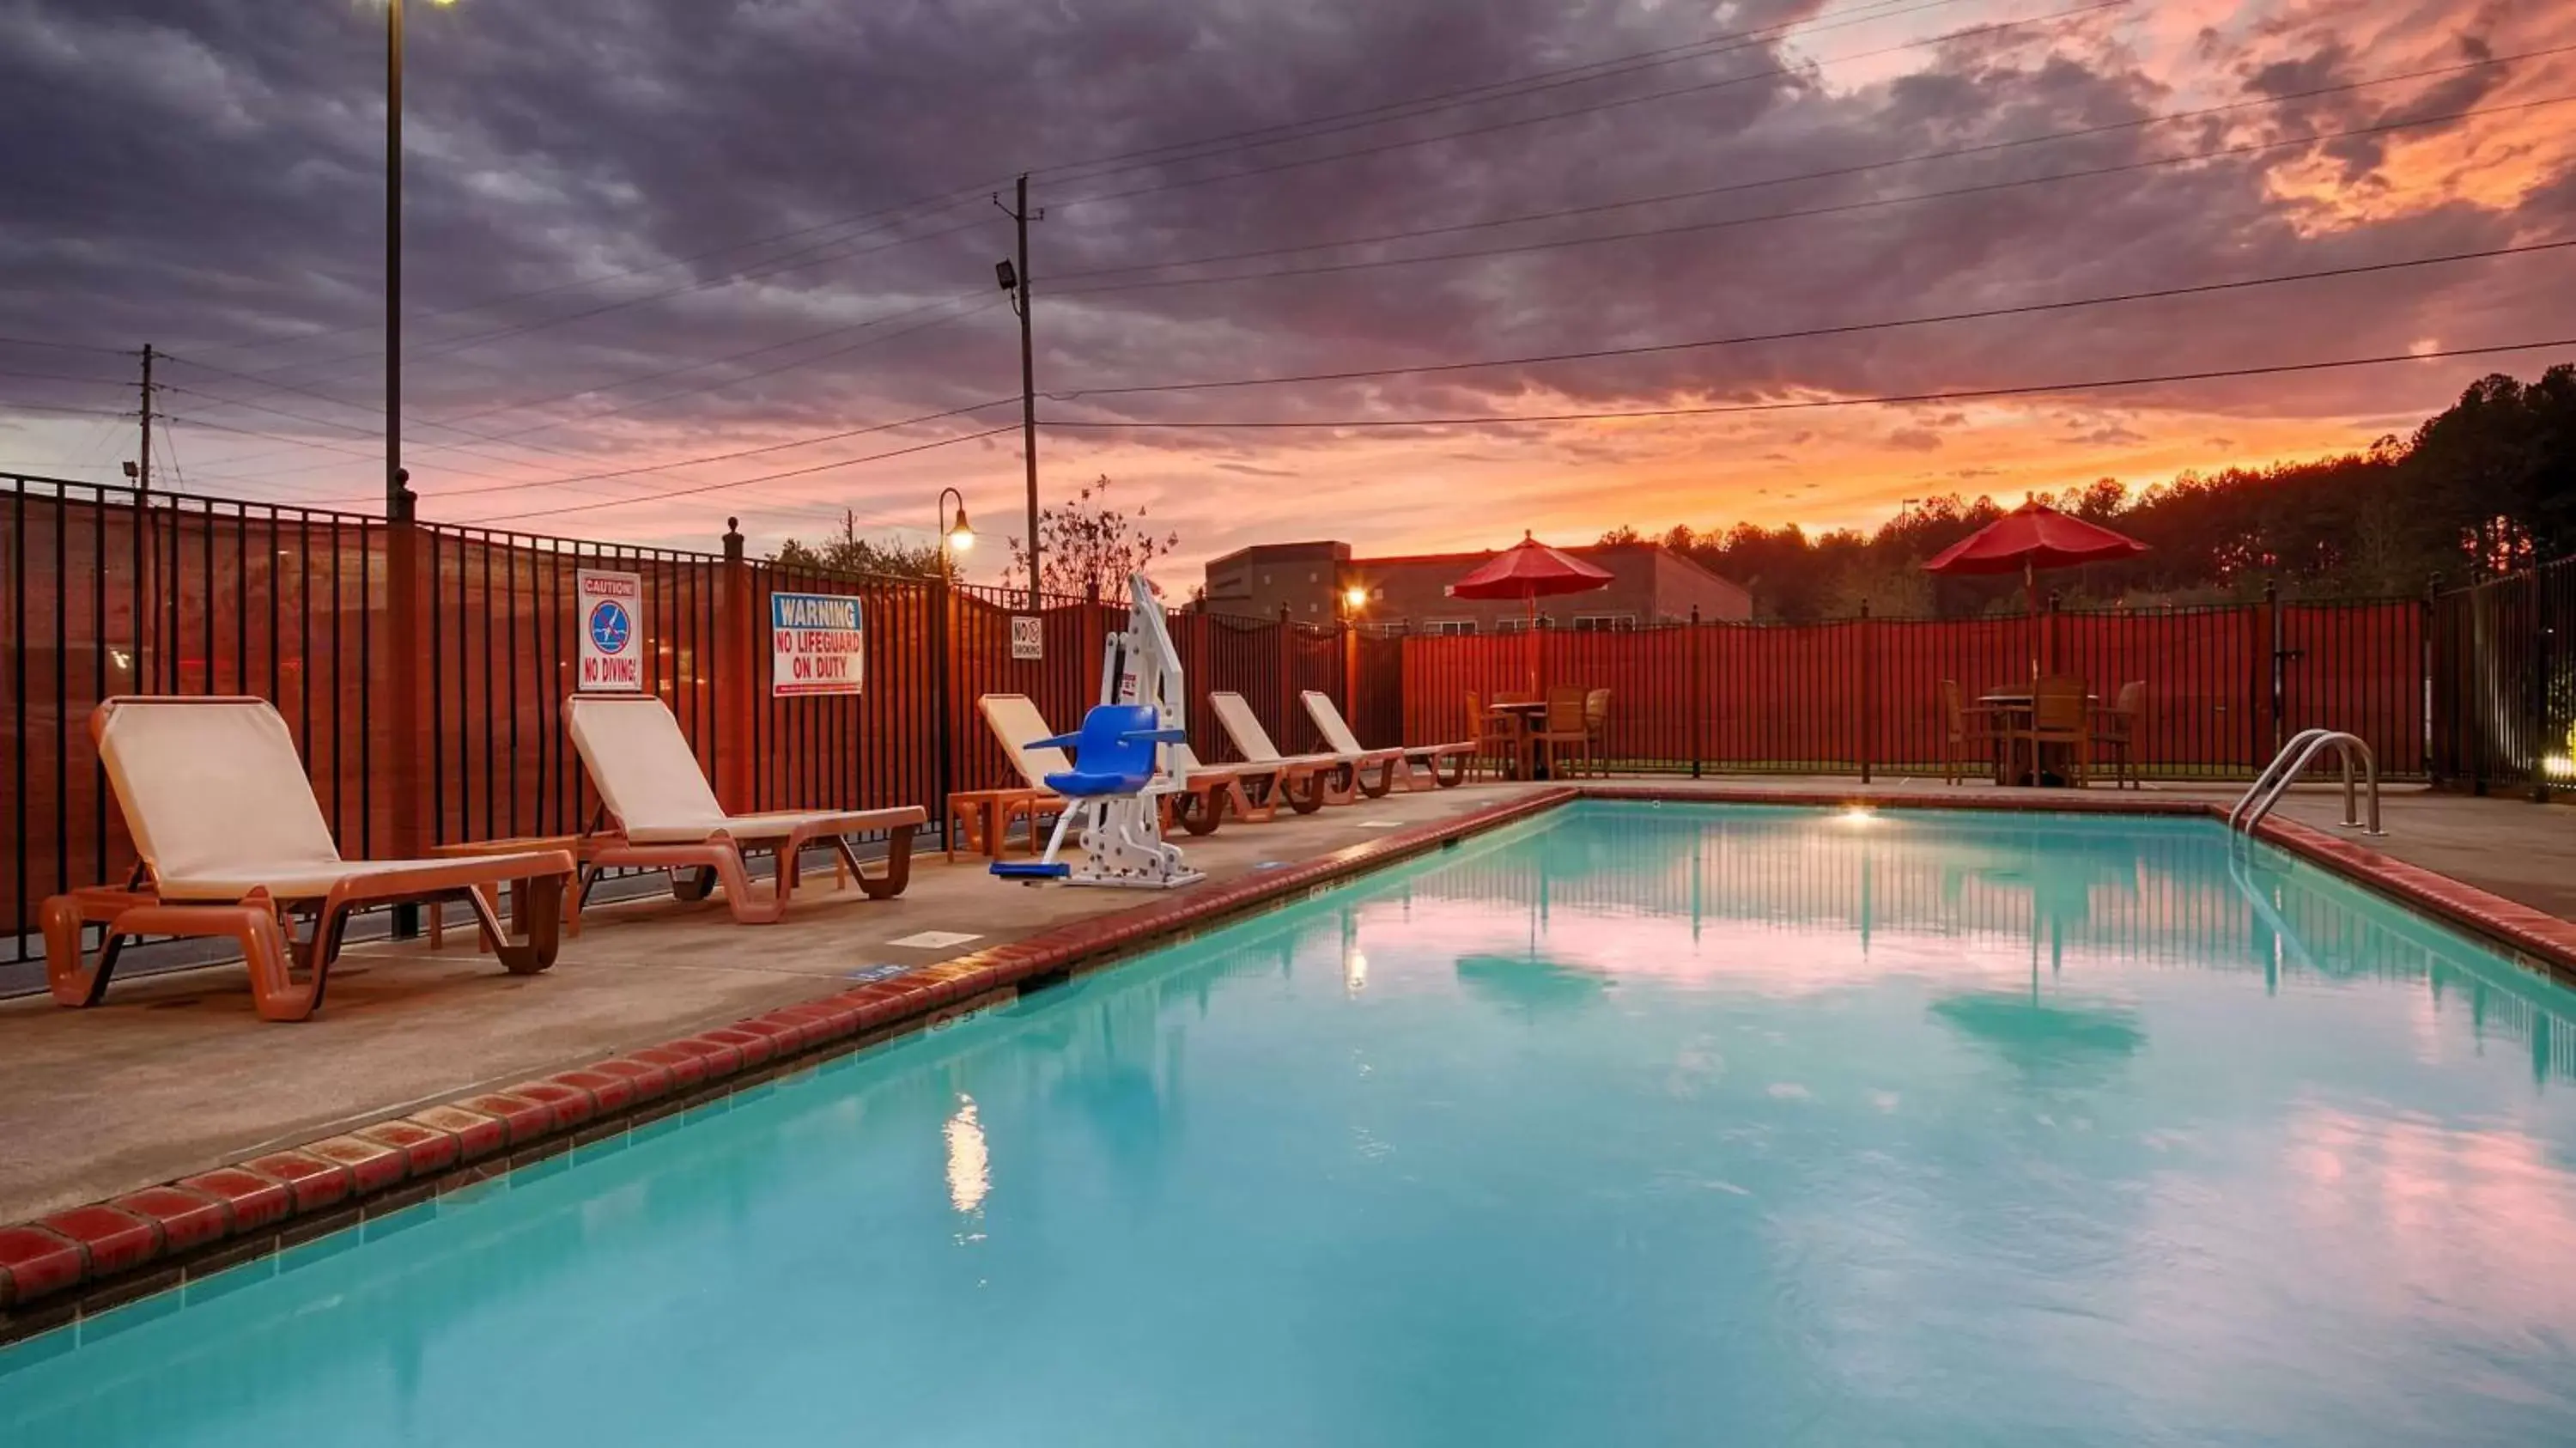 On site, Swimming Pool in Best Western Plus Gadsden Hotel & Suites